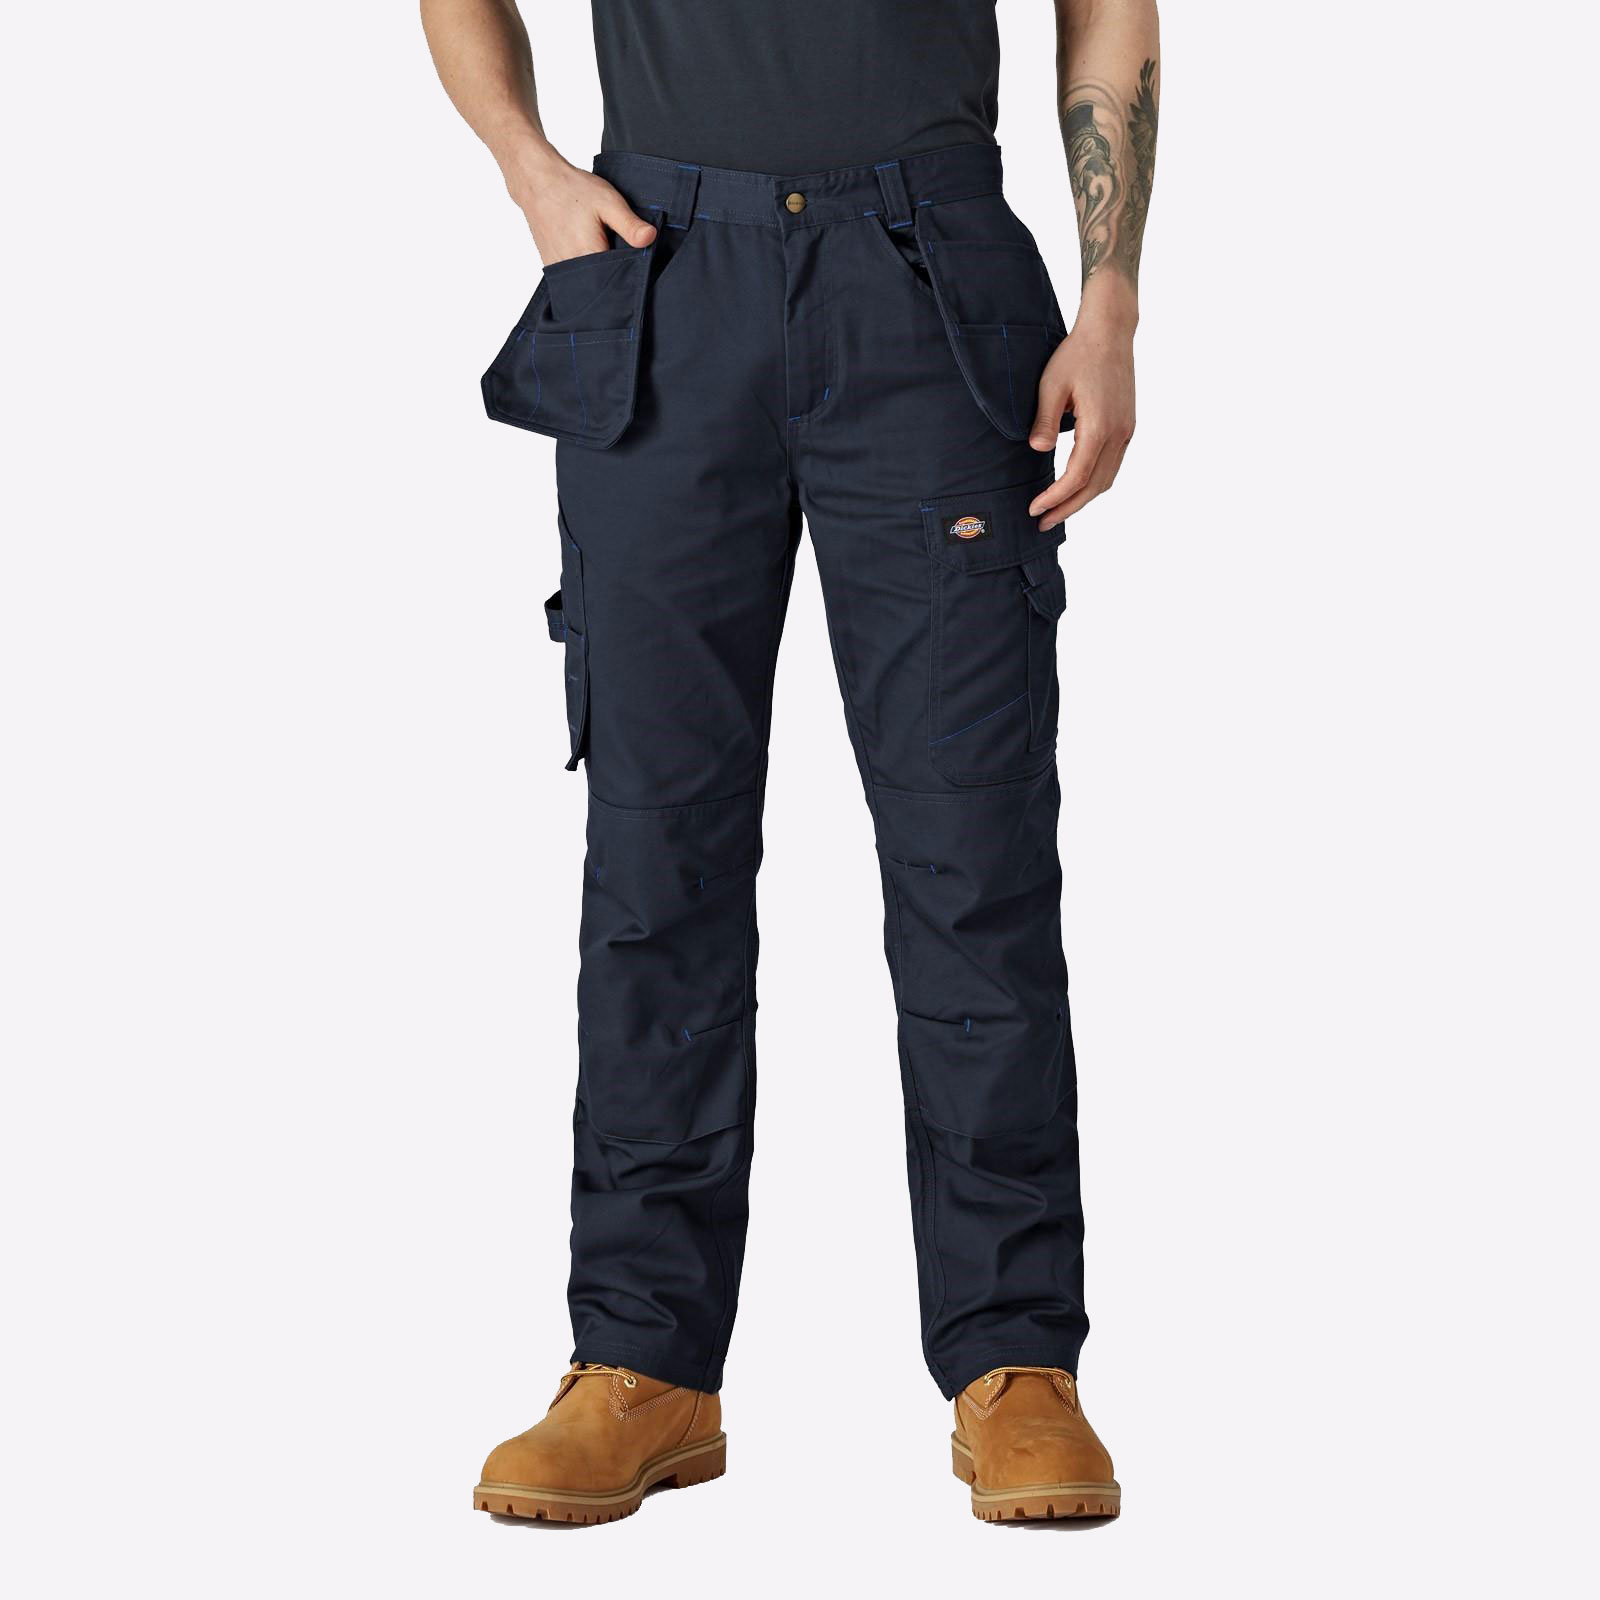 Dickies Redhawk Pro Trousers (Regular) Mens - GRD-36220-67555-09